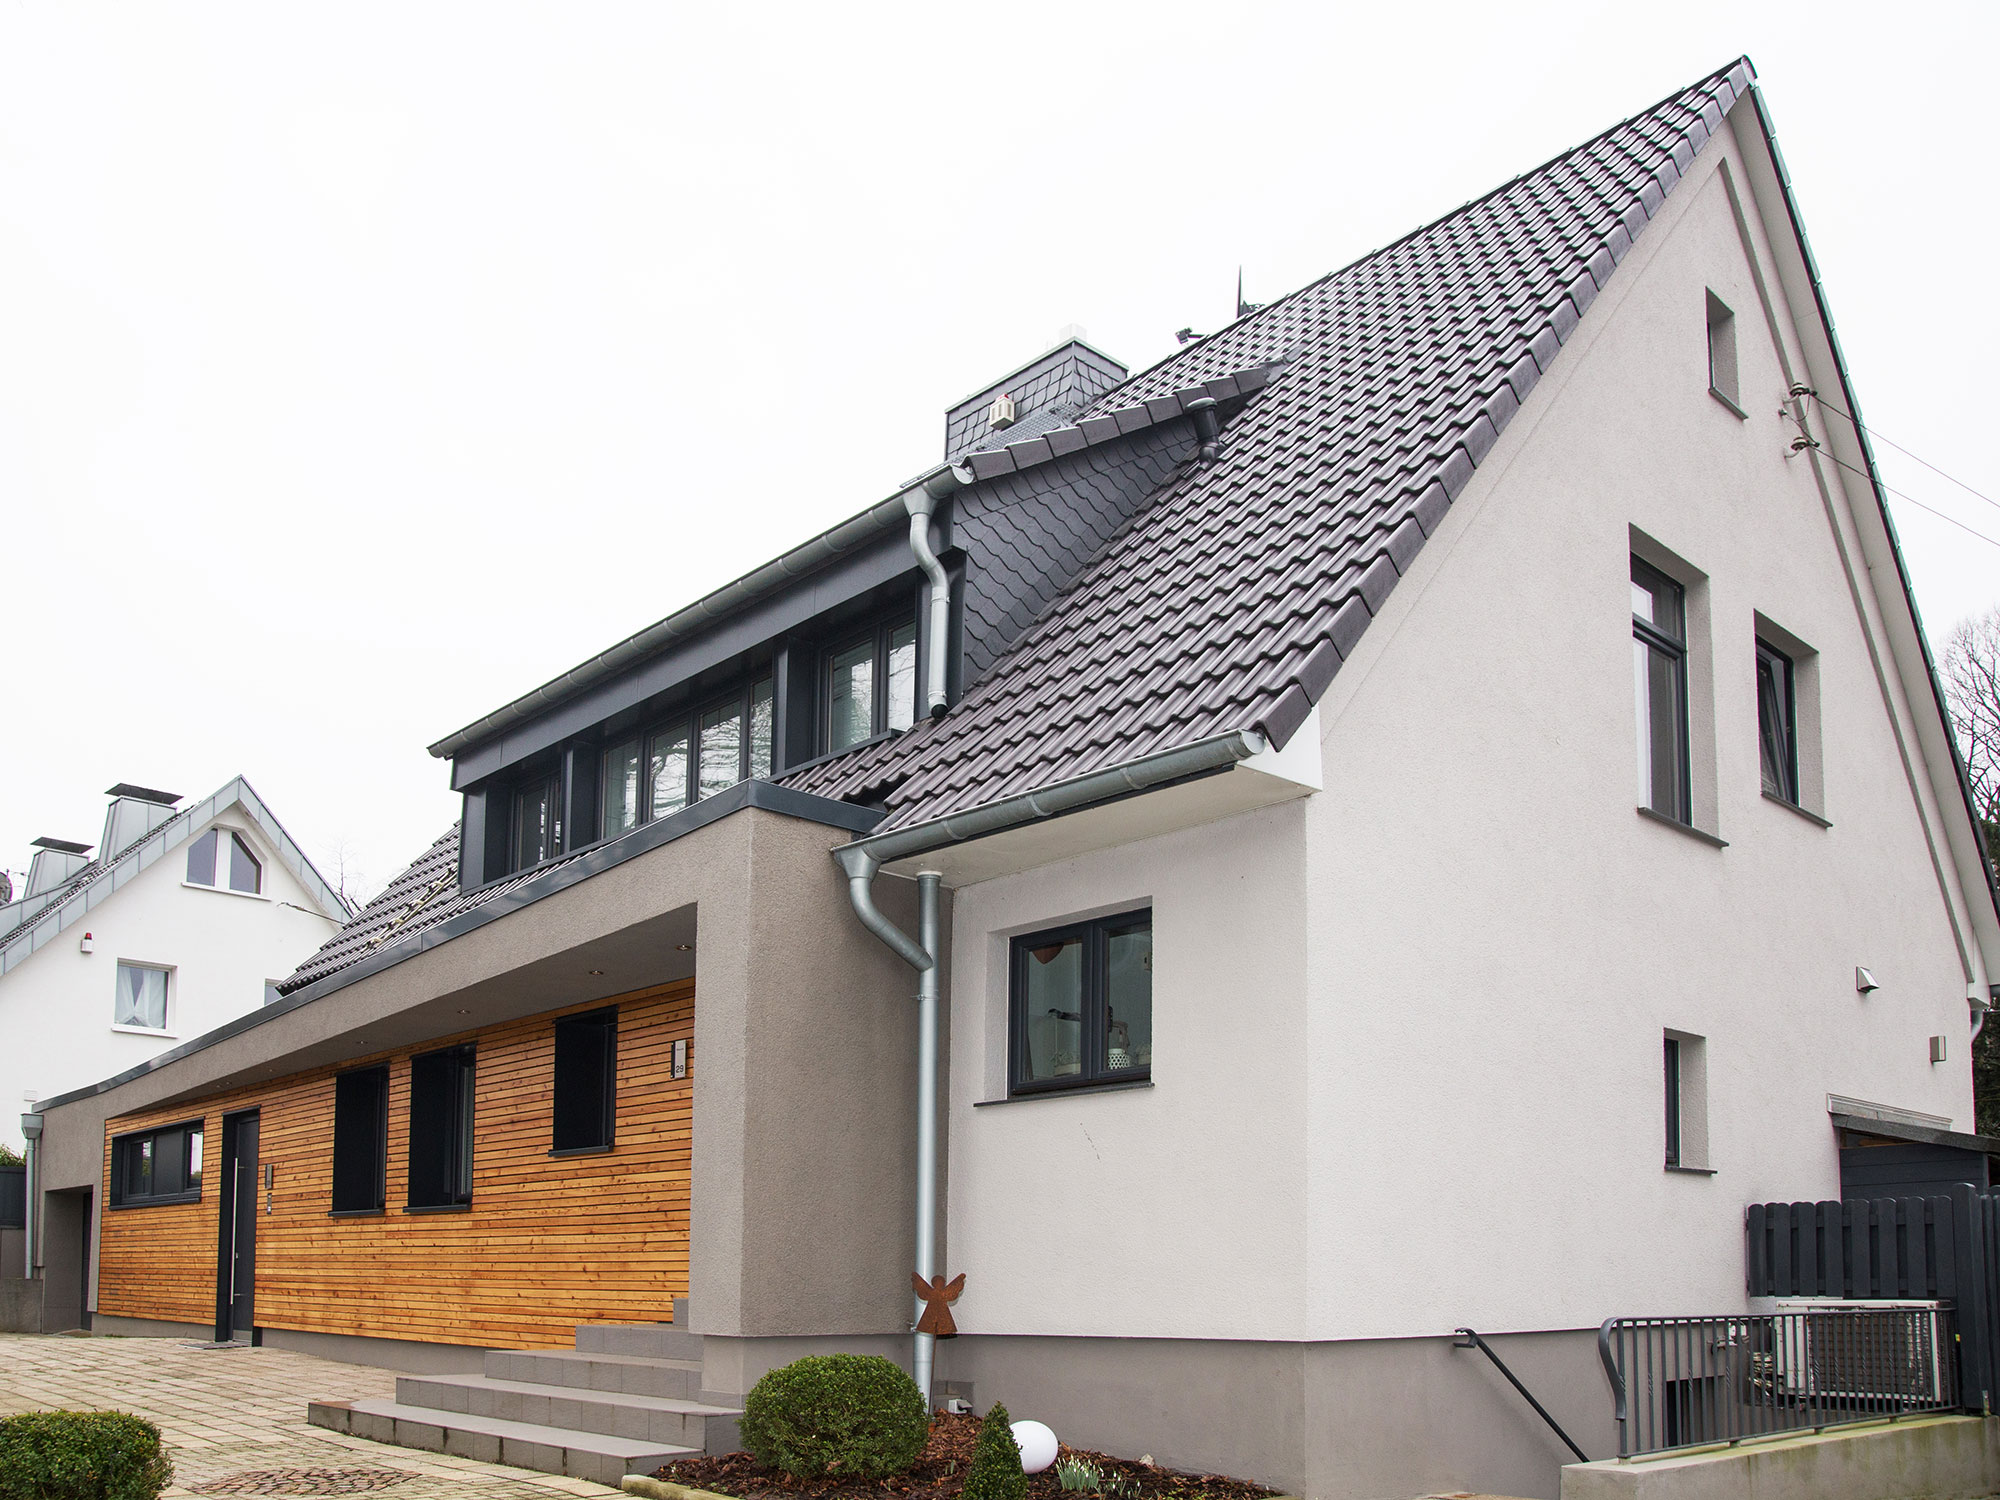 Anbau mit Lüftungsanlage - Wuppertal - ah-architektur.de | Alisic-Haverkamp – Wir verfolgen das Ziel, funktionelle, kostenbewusste und ambitioniert gestaltete Architektur zu schaffen, die einen ah-Effekt auslöst.